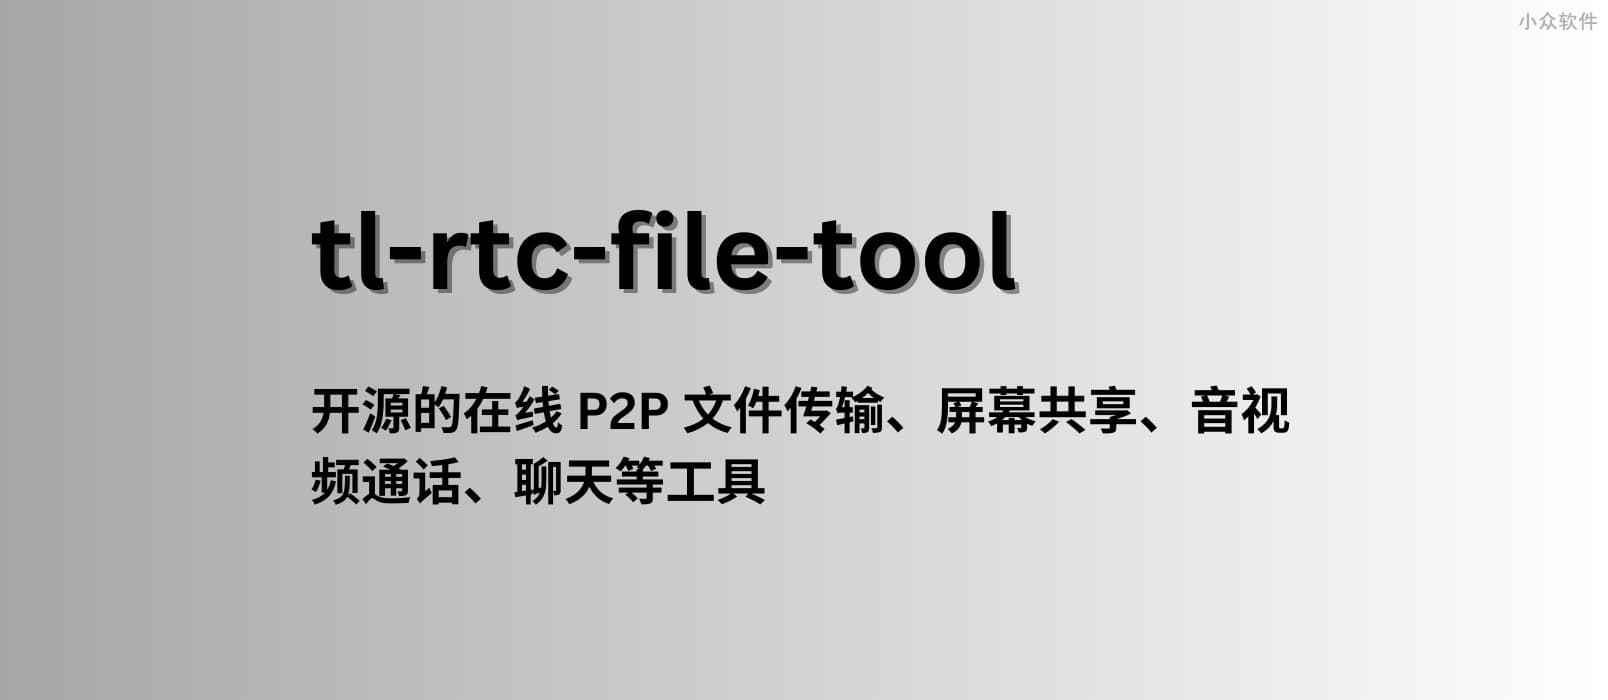 tl-rtc-file-tool - 一款开源的在线 P2P 文件传输、屏幕共享、音视频通话等工具 